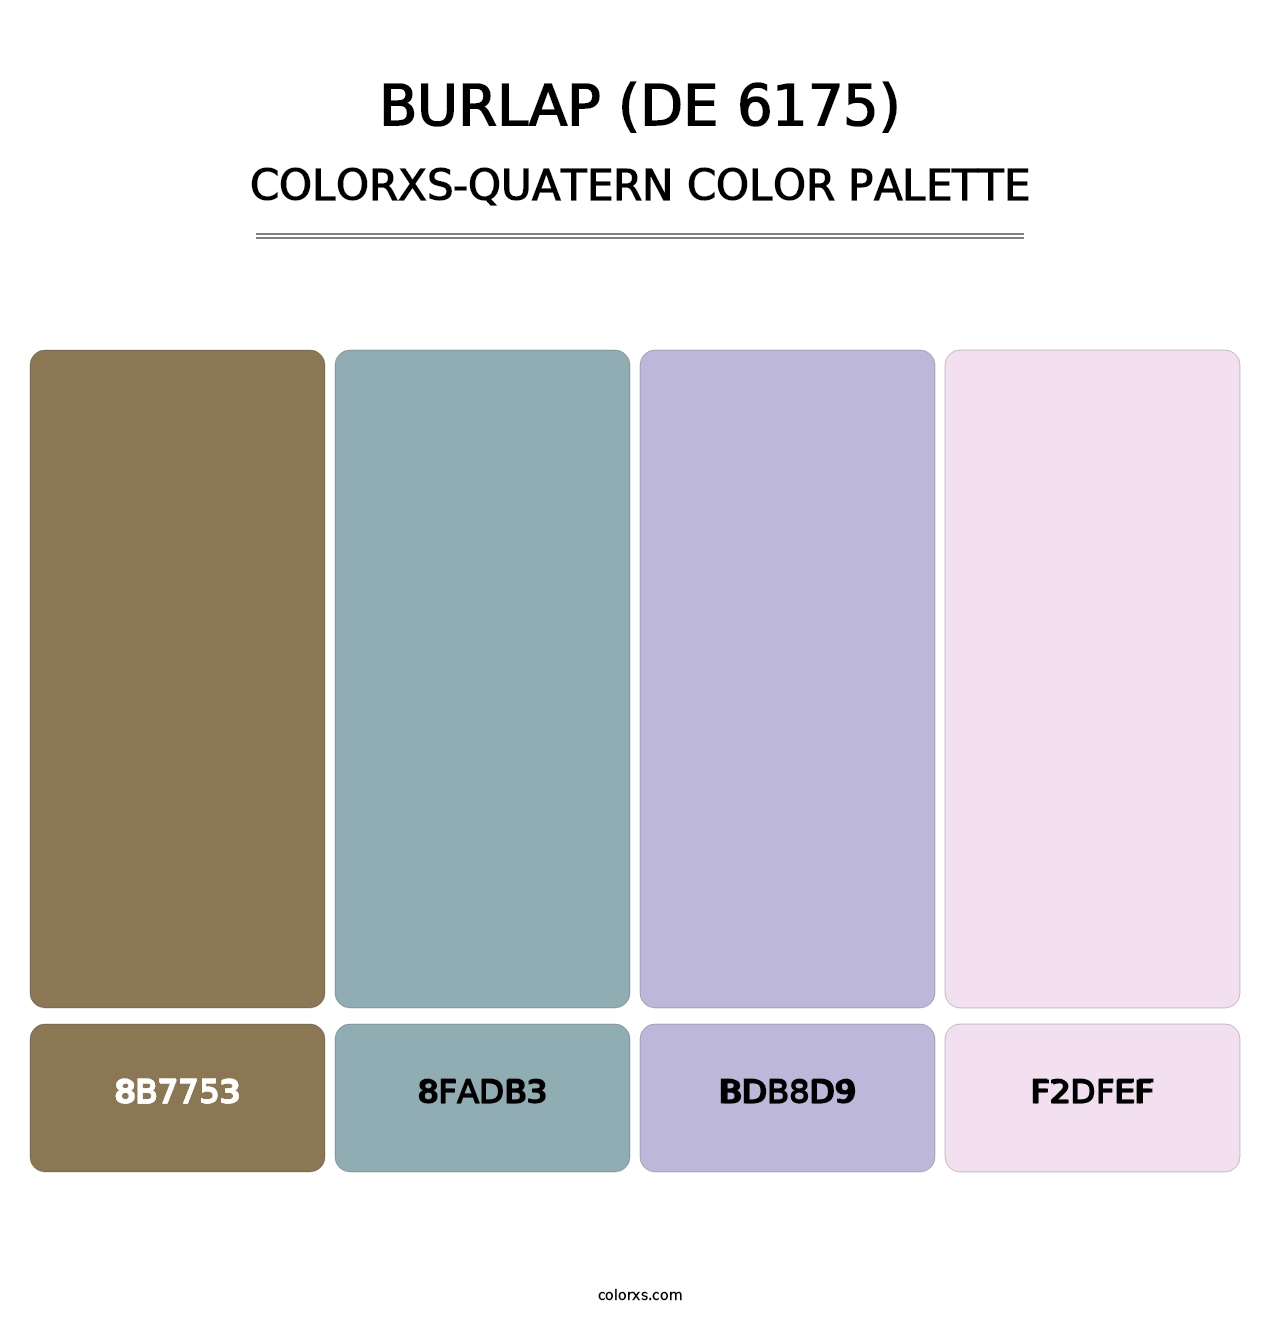 Burlap (DE 6175) - Colorxs Quatern Palette